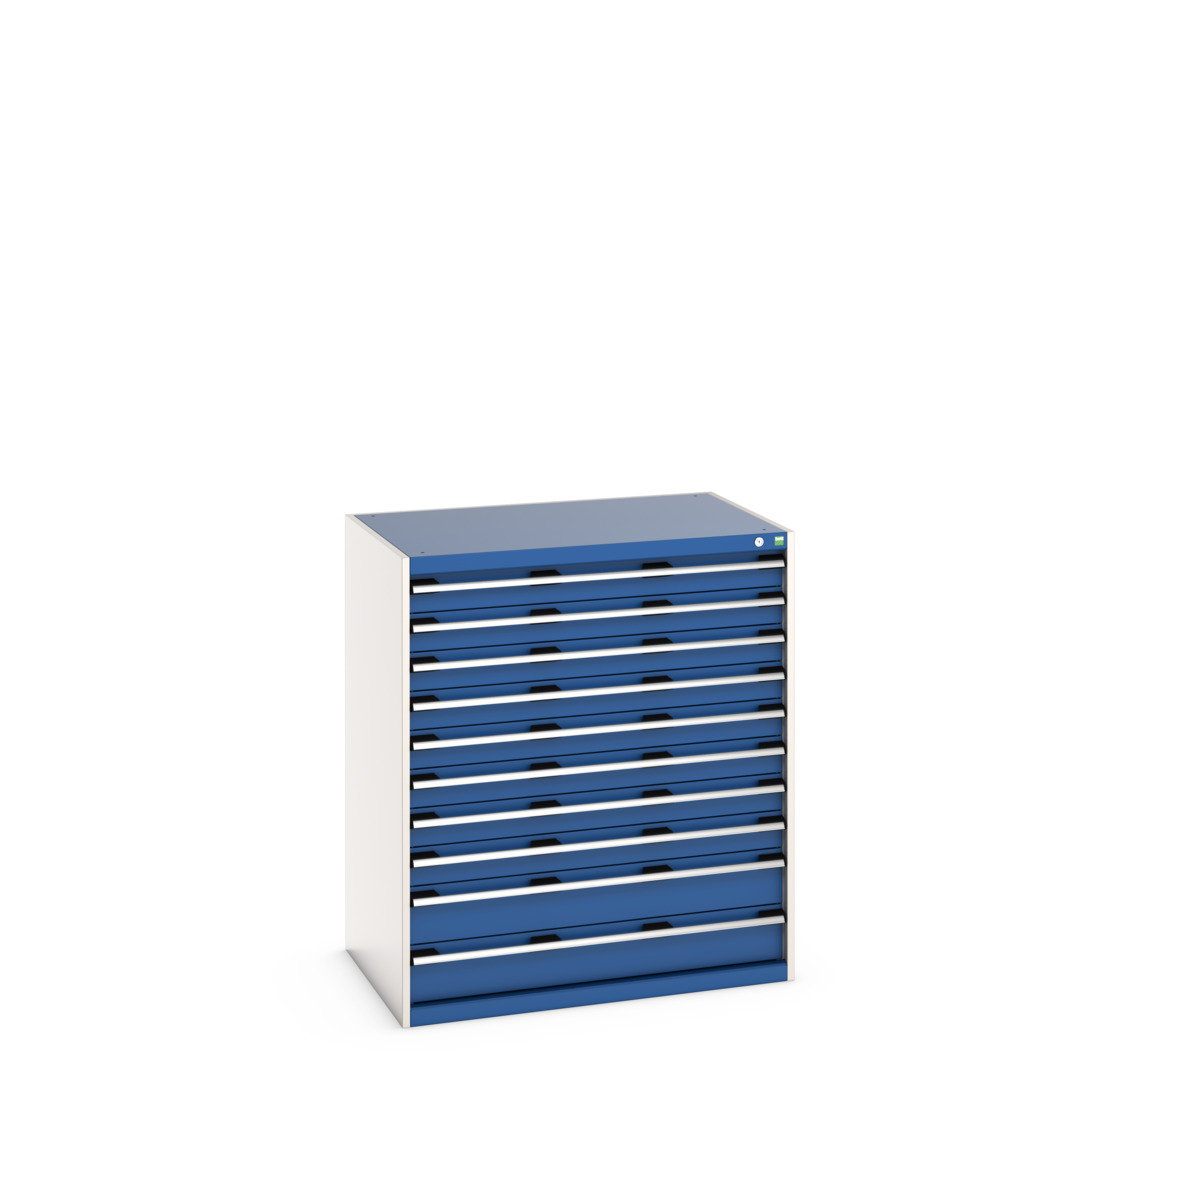 40029033.11V - cubio drawer cabinet